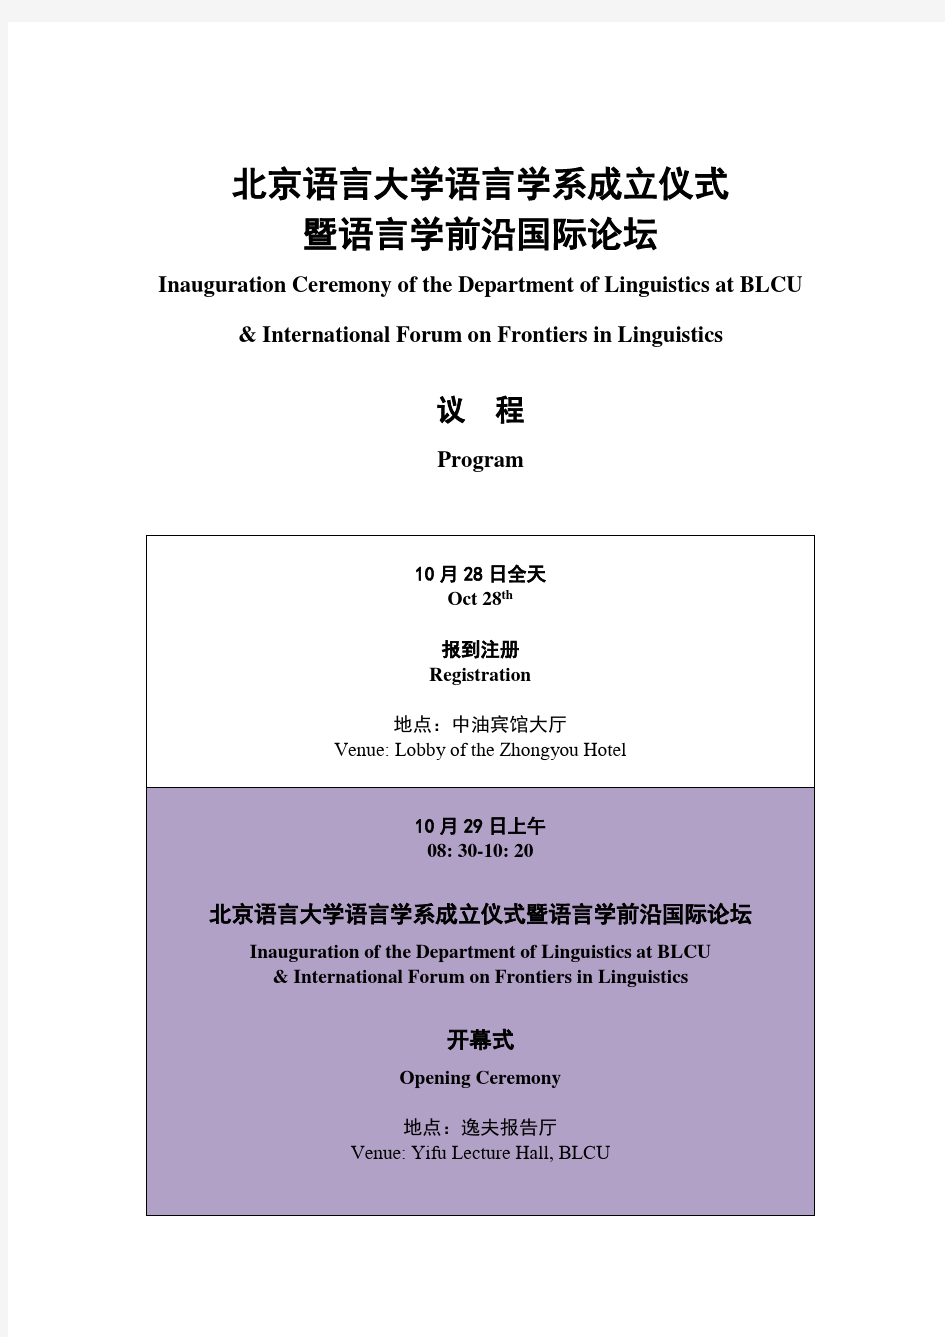 北京语言大学语言学系成立仪式暨语言学前沿国际论坛